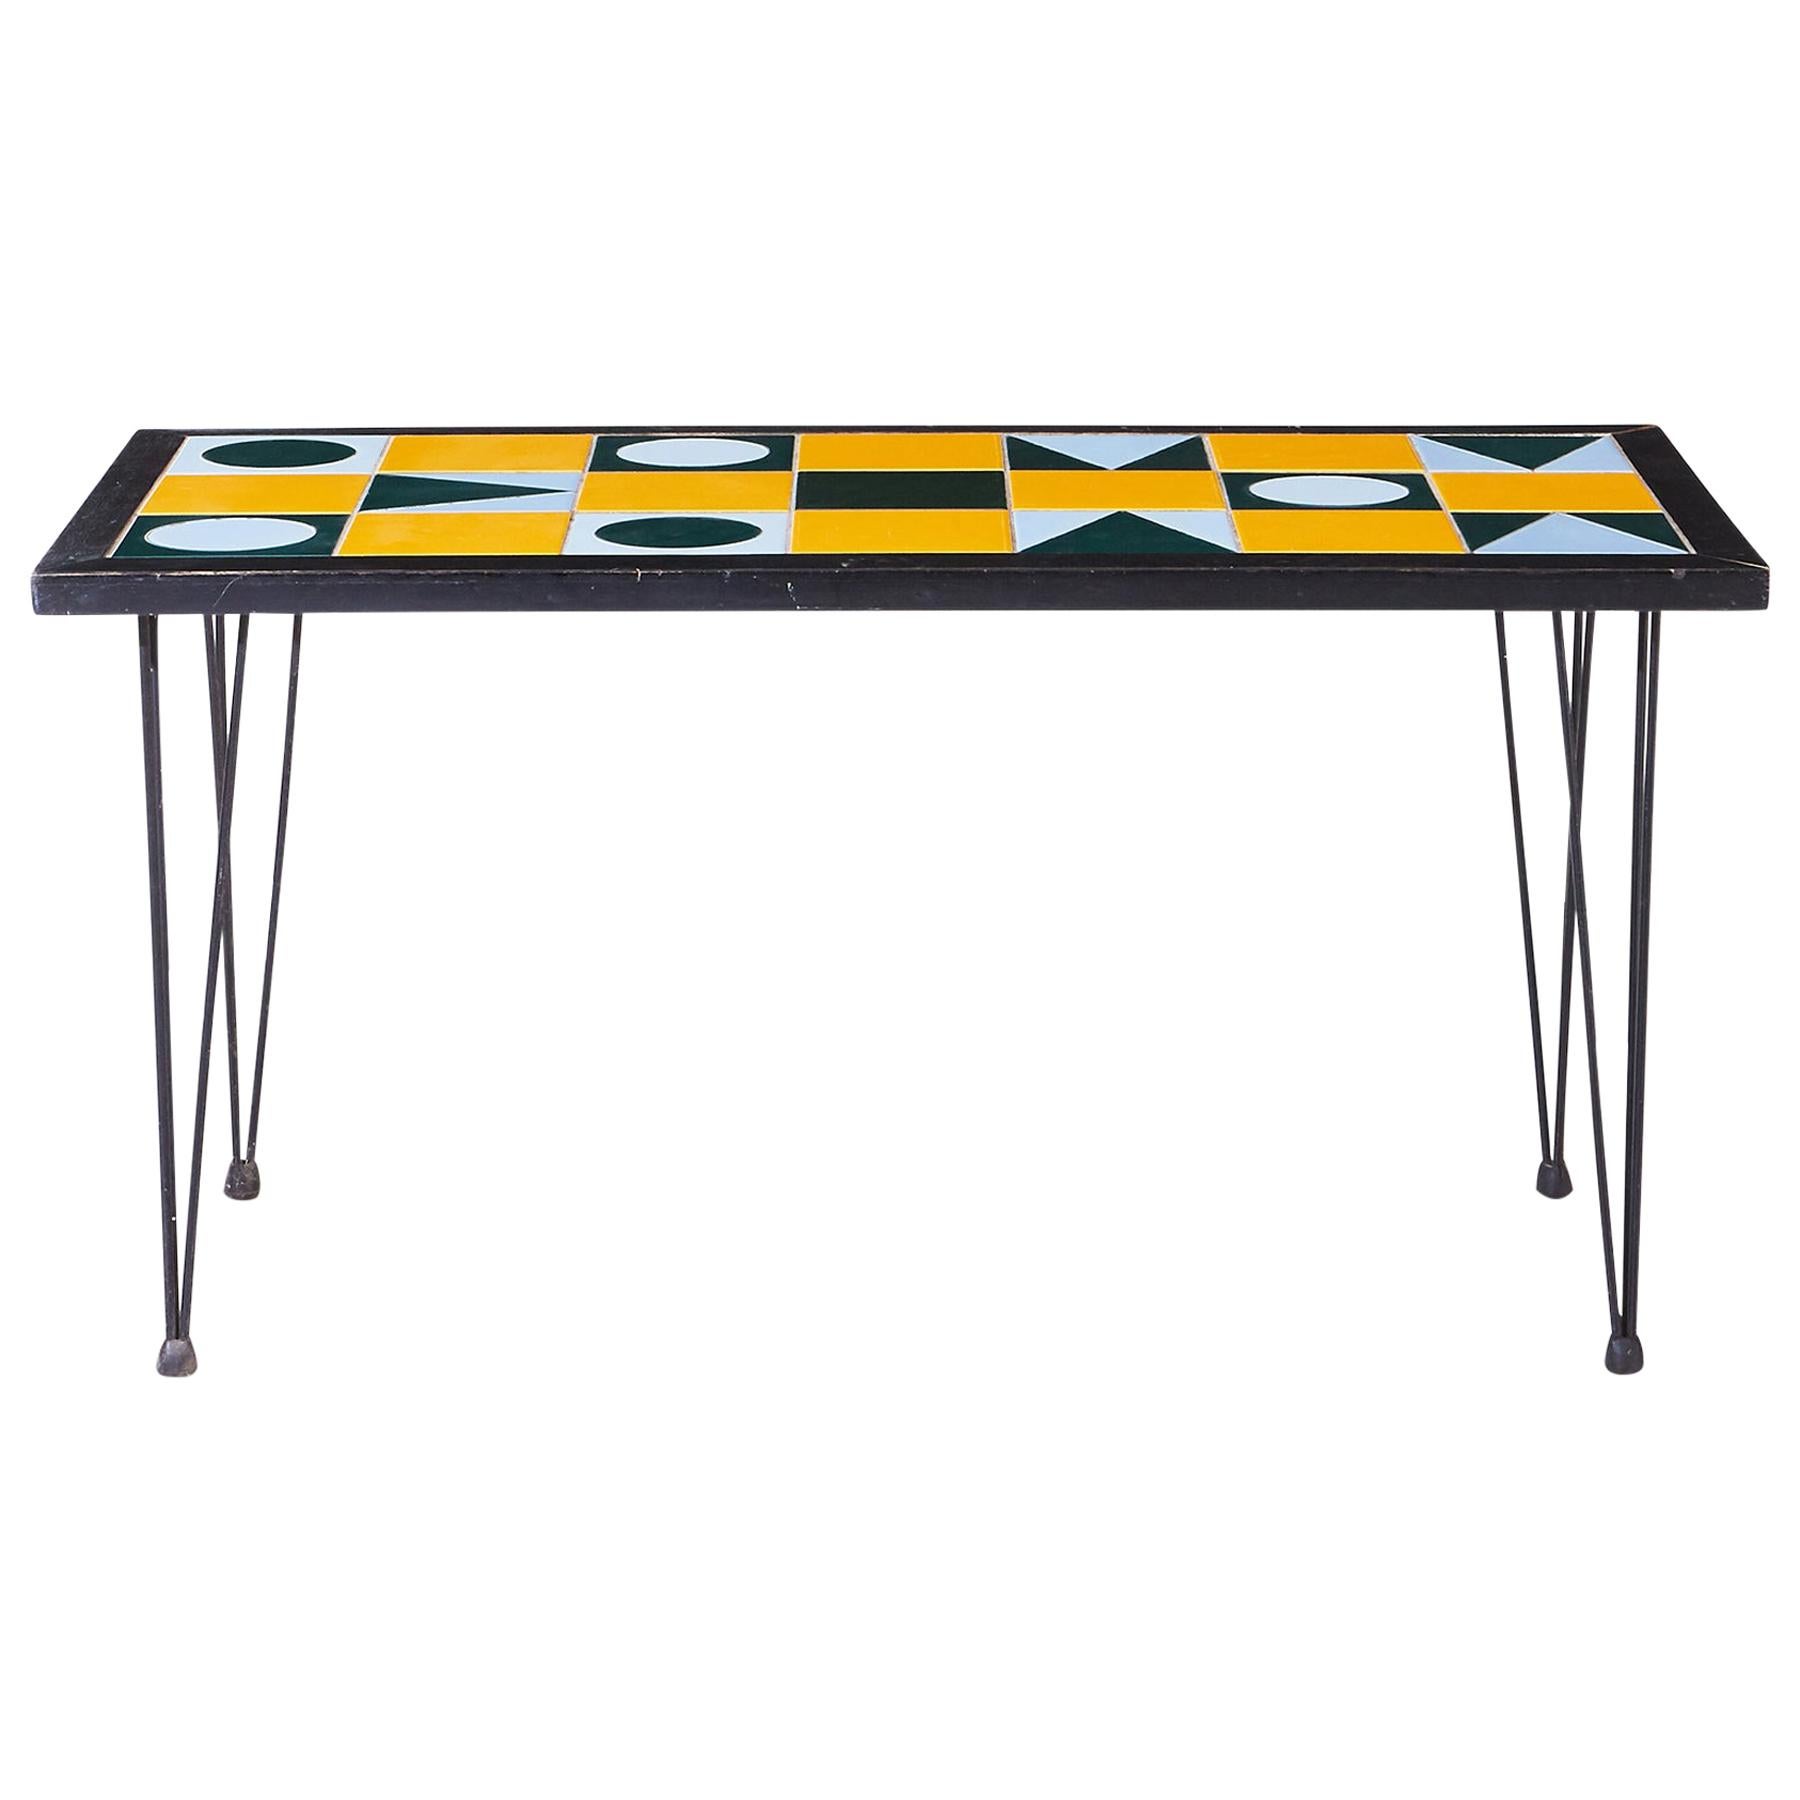 1960s Swedish Modern Geometric Tile Top Coffee Table